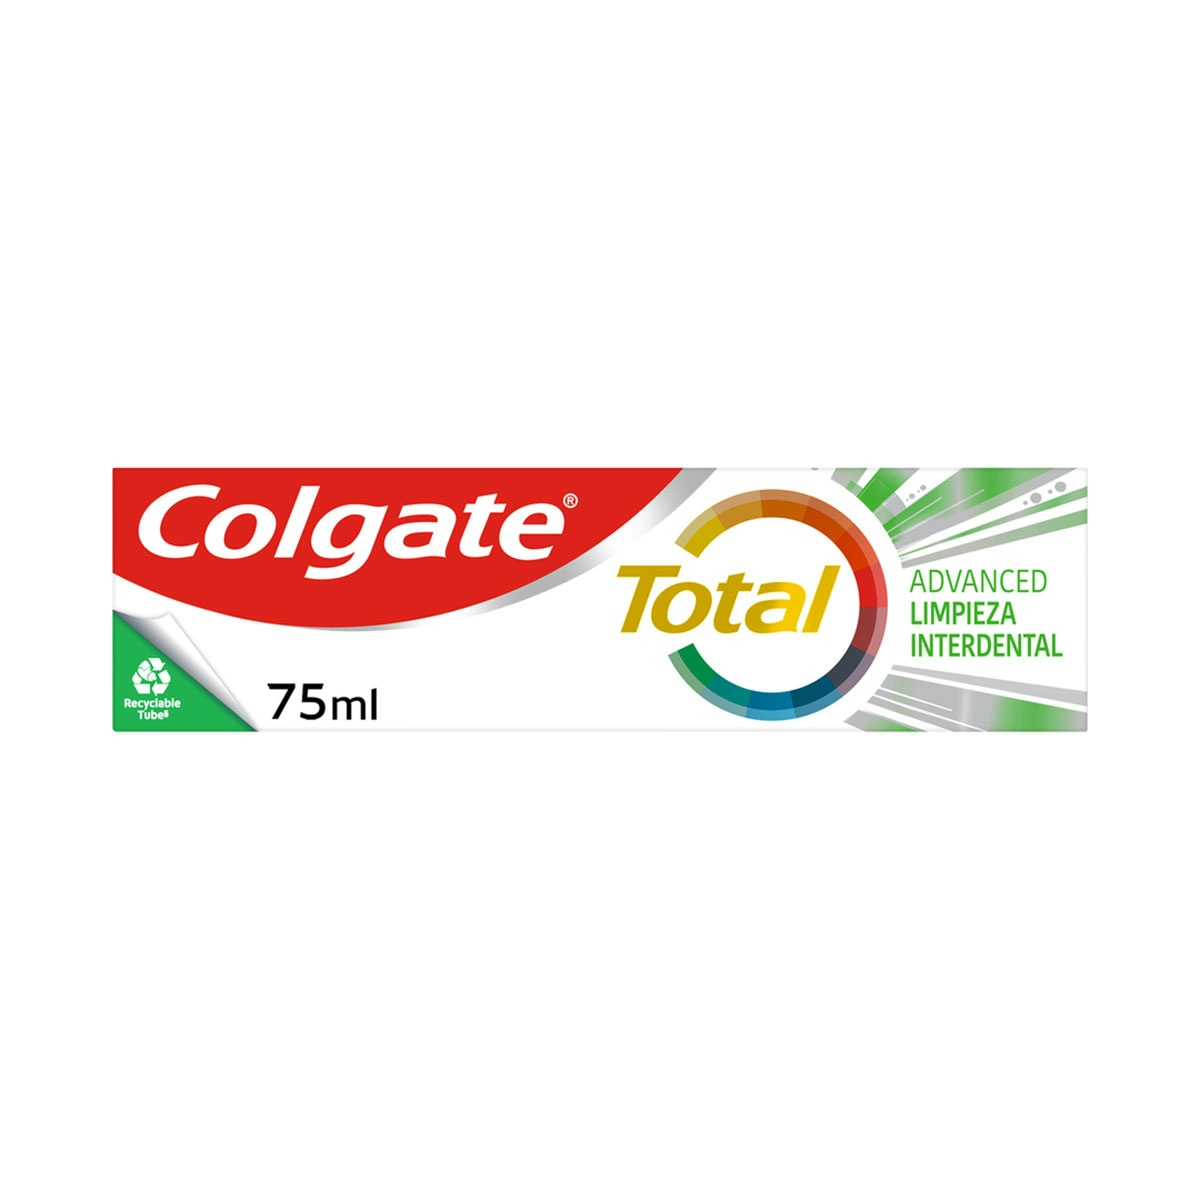 Pasta de dientes Colgate Total Advanced Limpieza Interdental 24h de protección completa 75ml